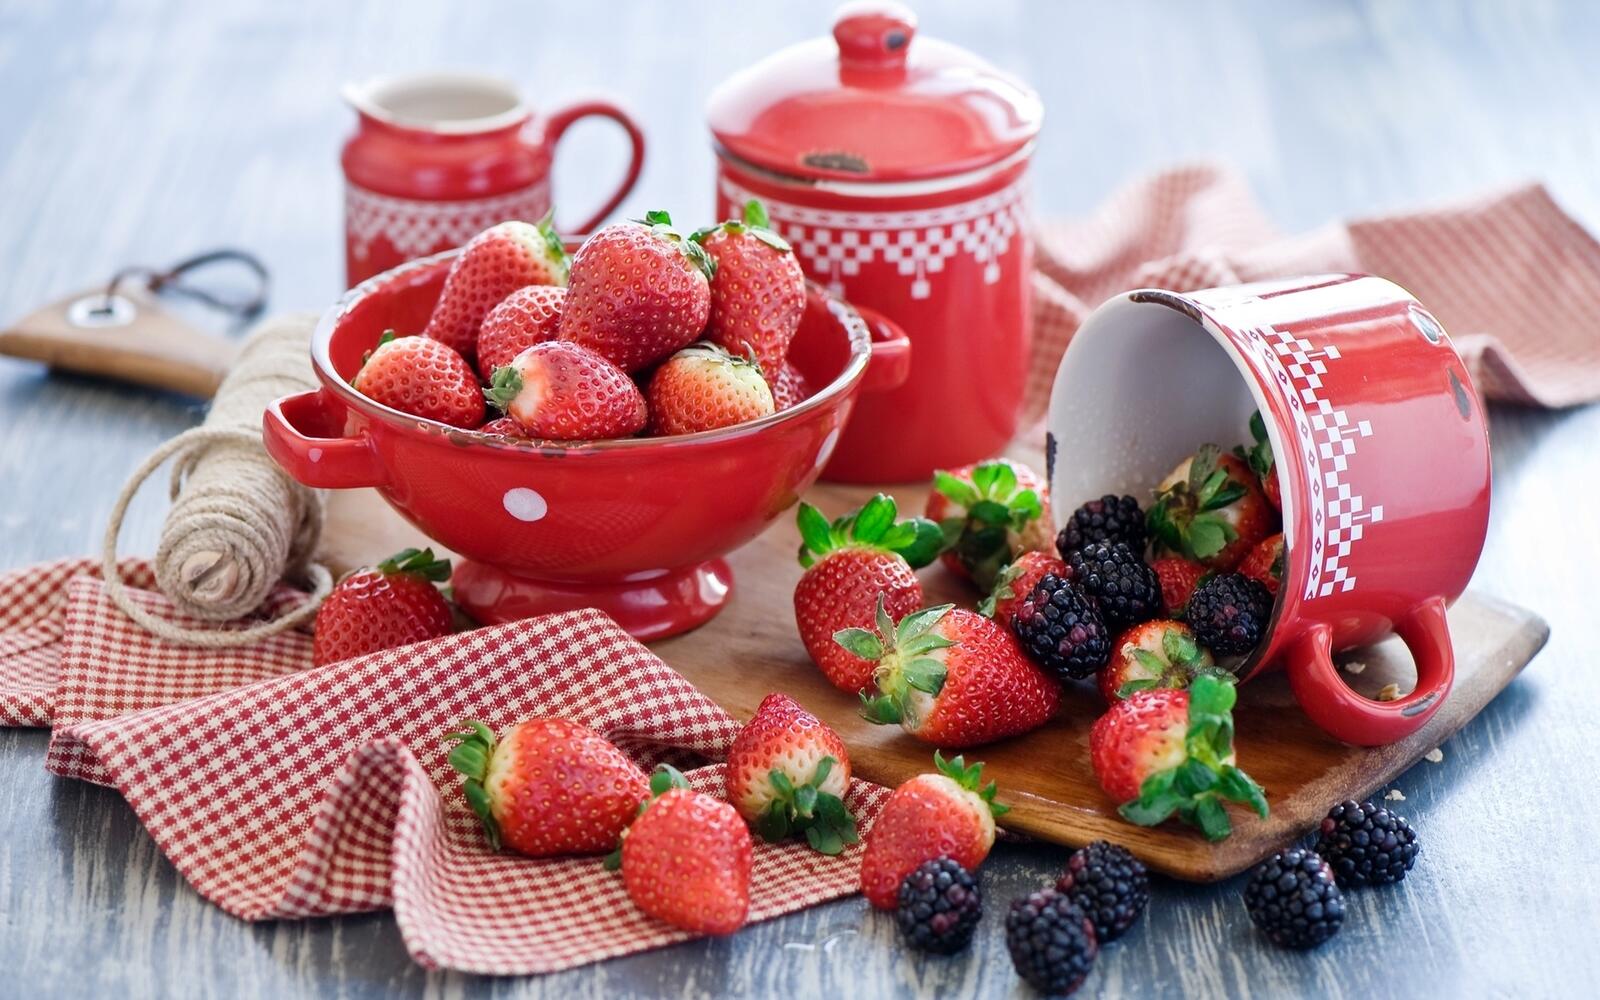 Wallpapers berries strawberries table on the desktop